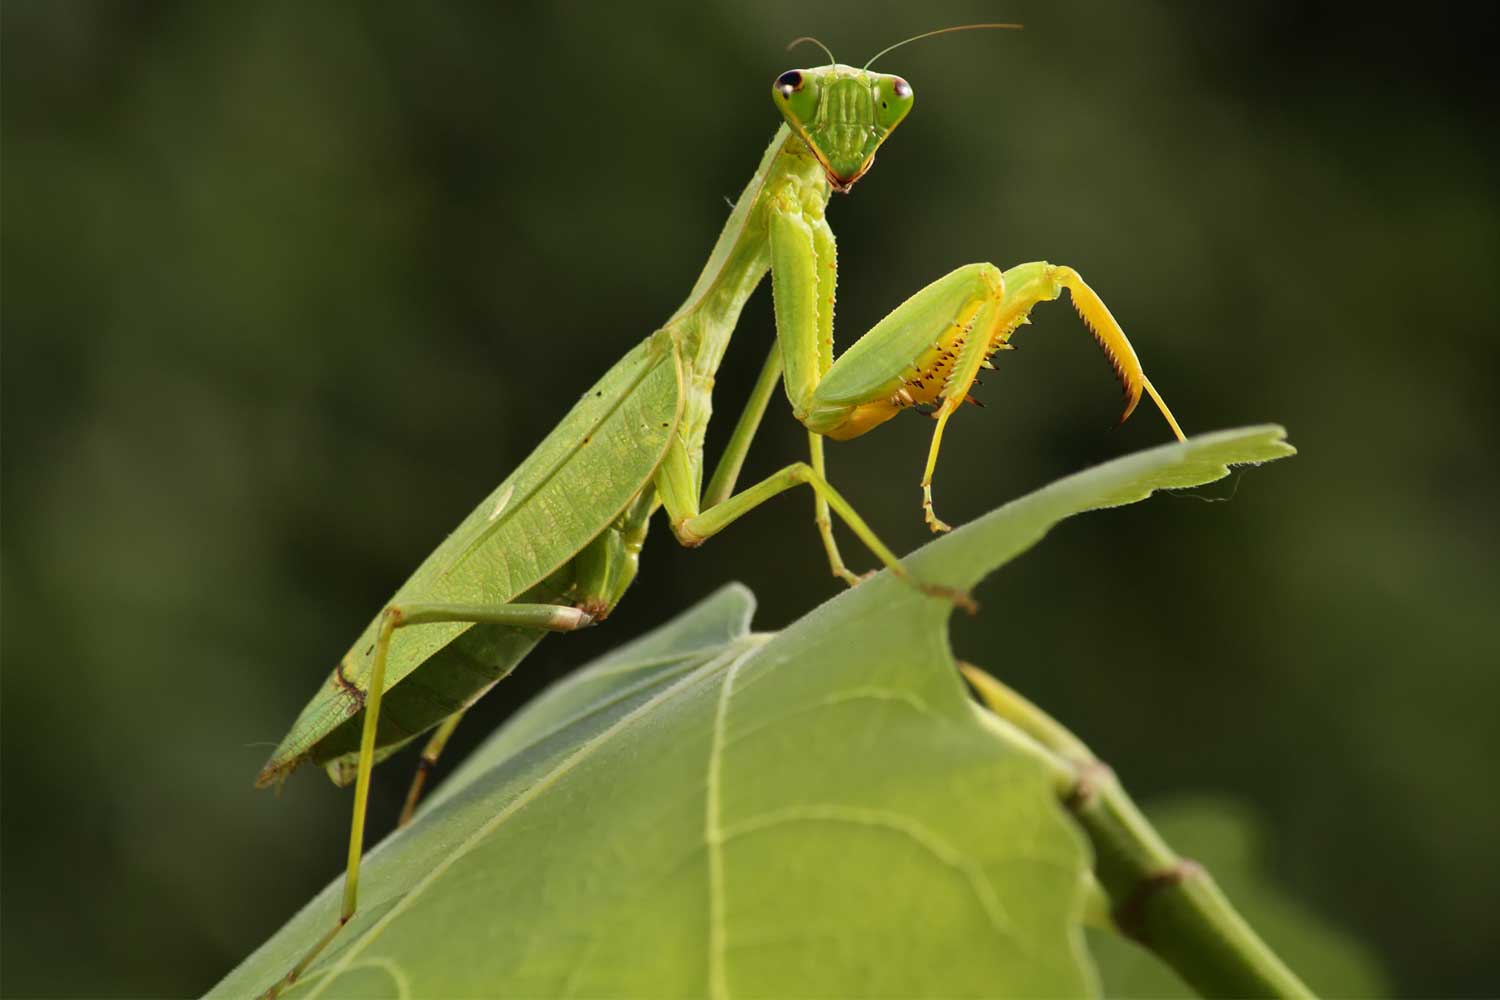 Praying mantis standing on leaves.